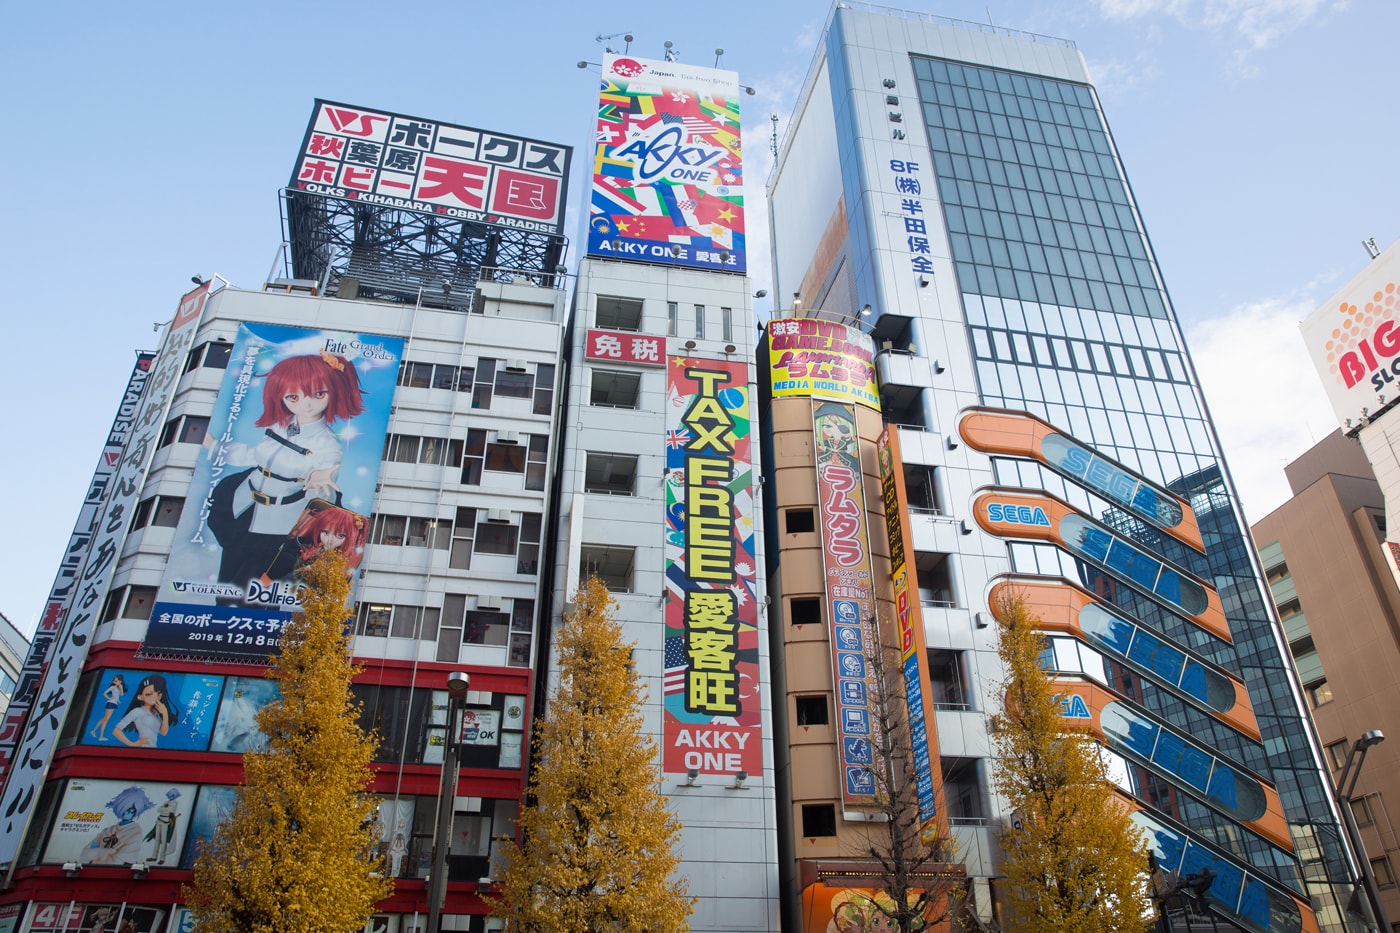 東京秋葉原地標 SEGA Arcade 2 號店正式停止營業